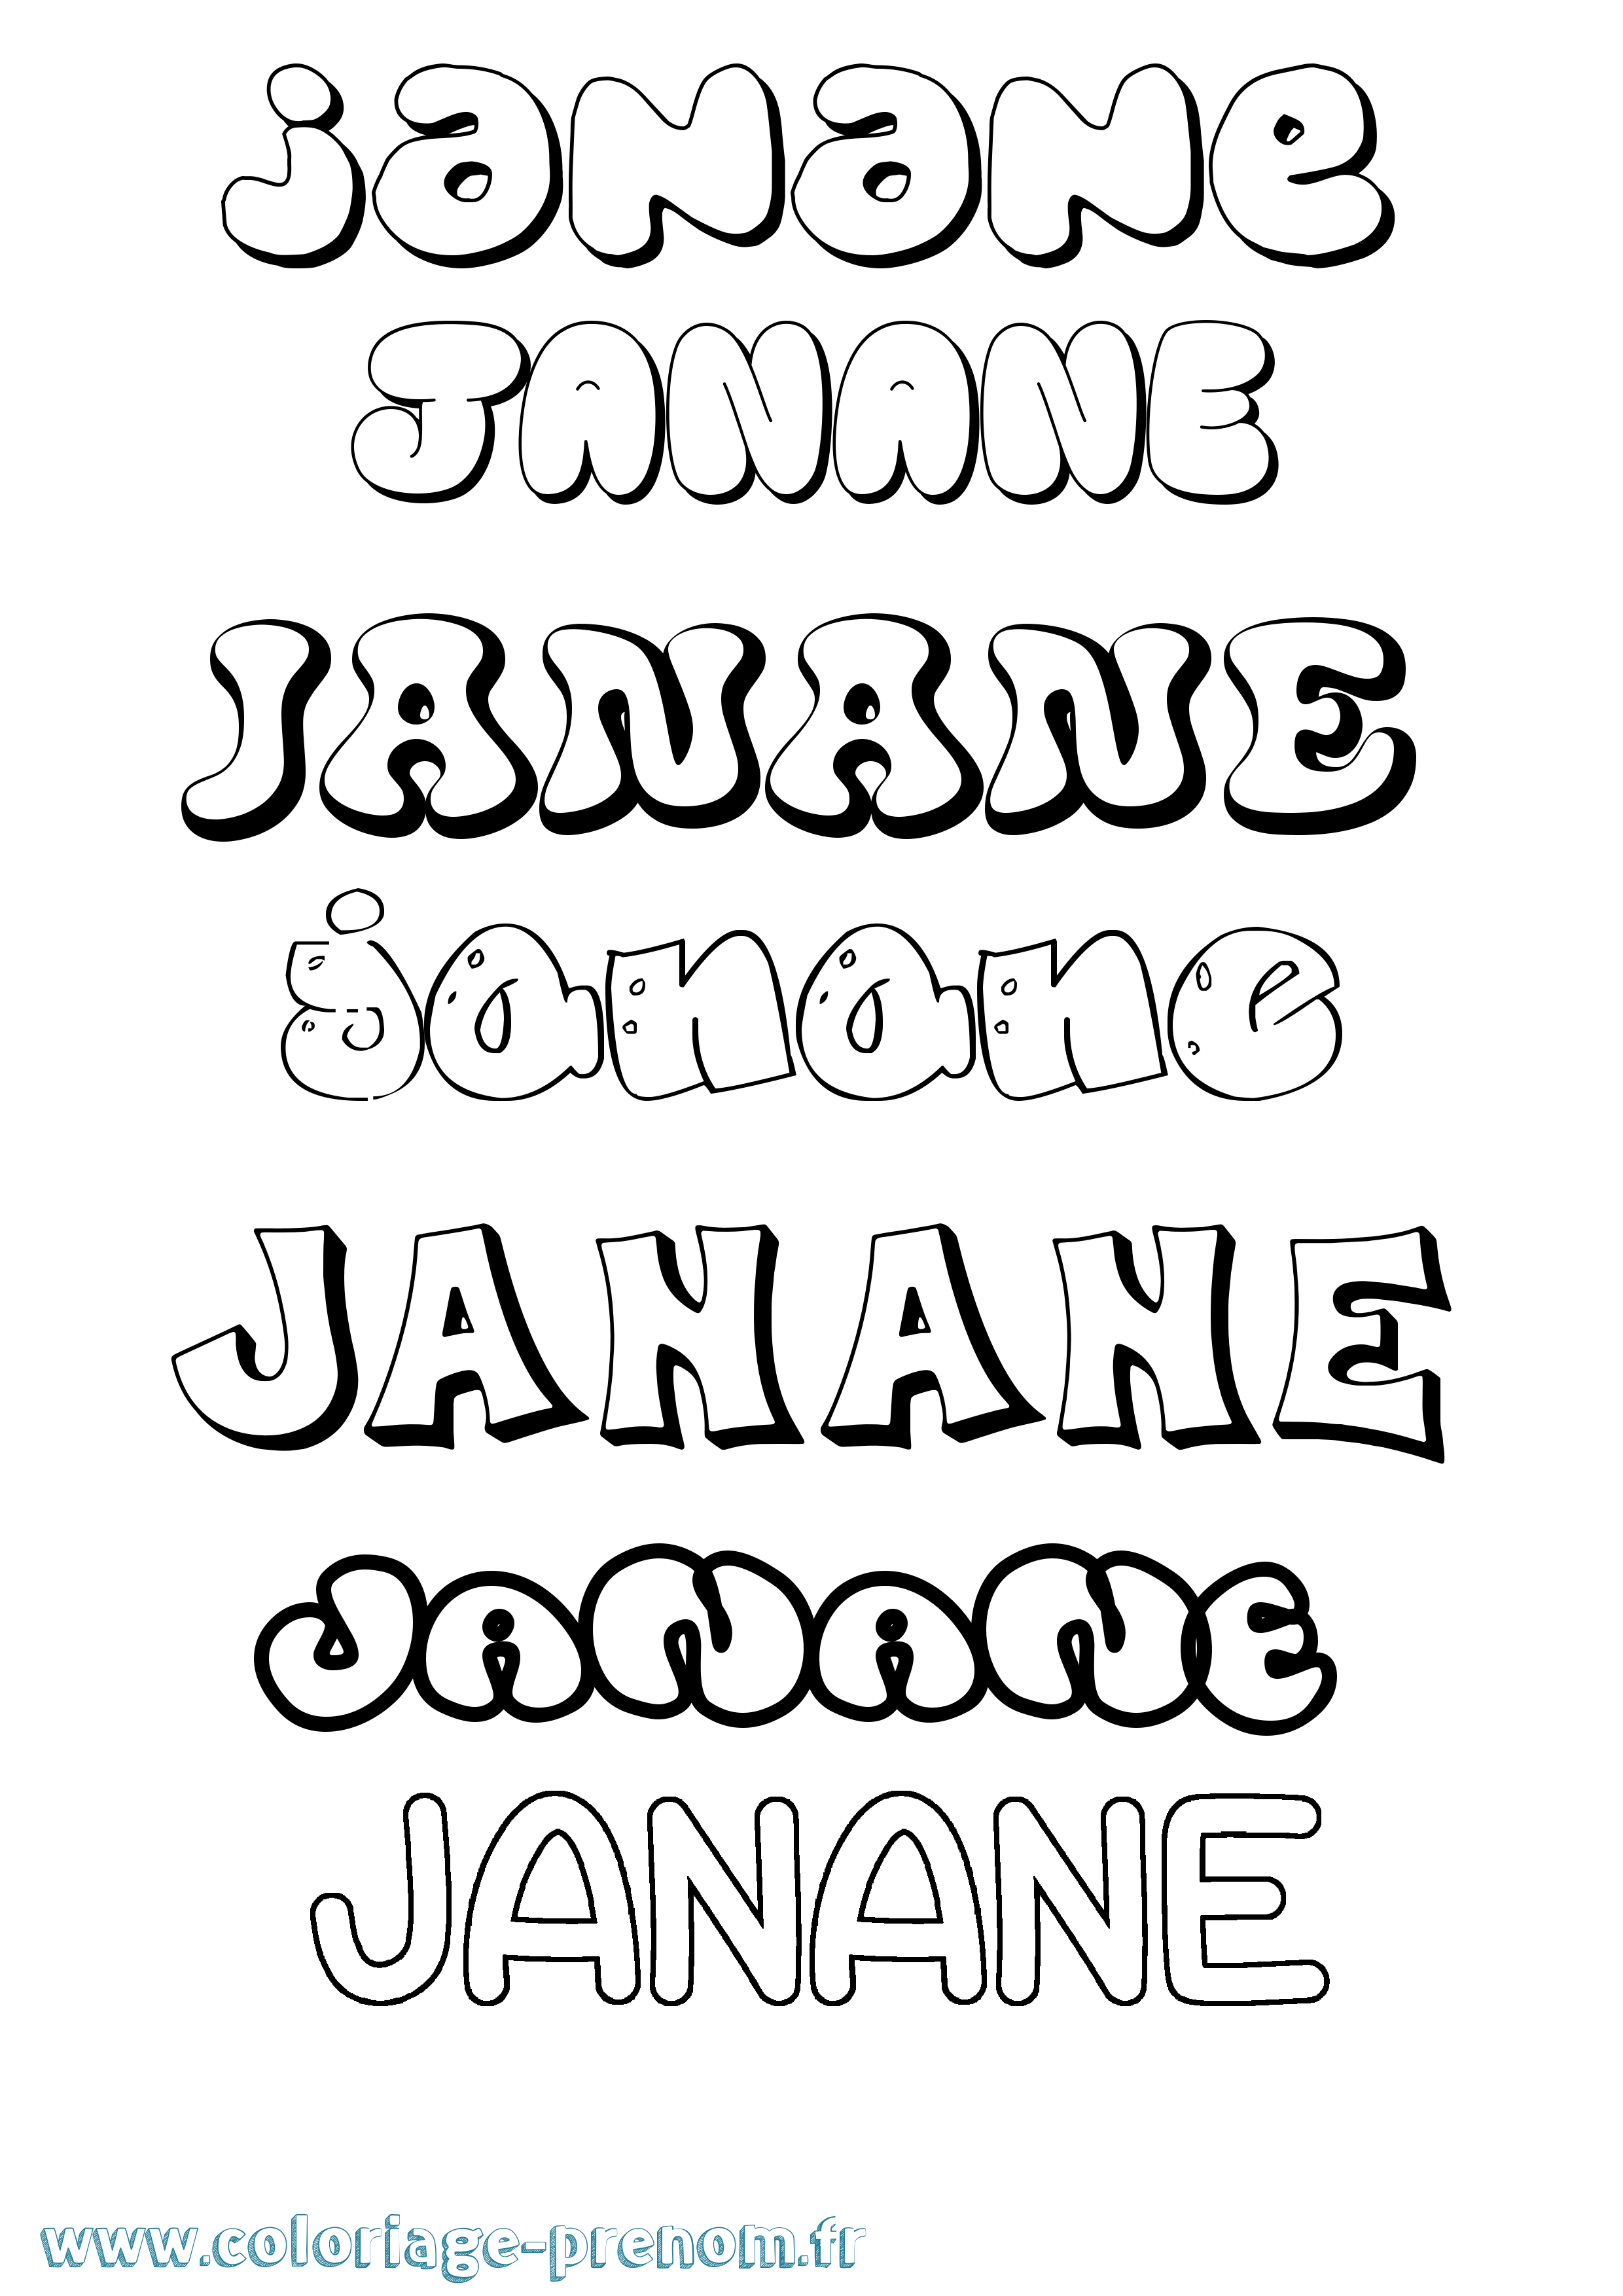 Coloriage prénom Janane Bubble